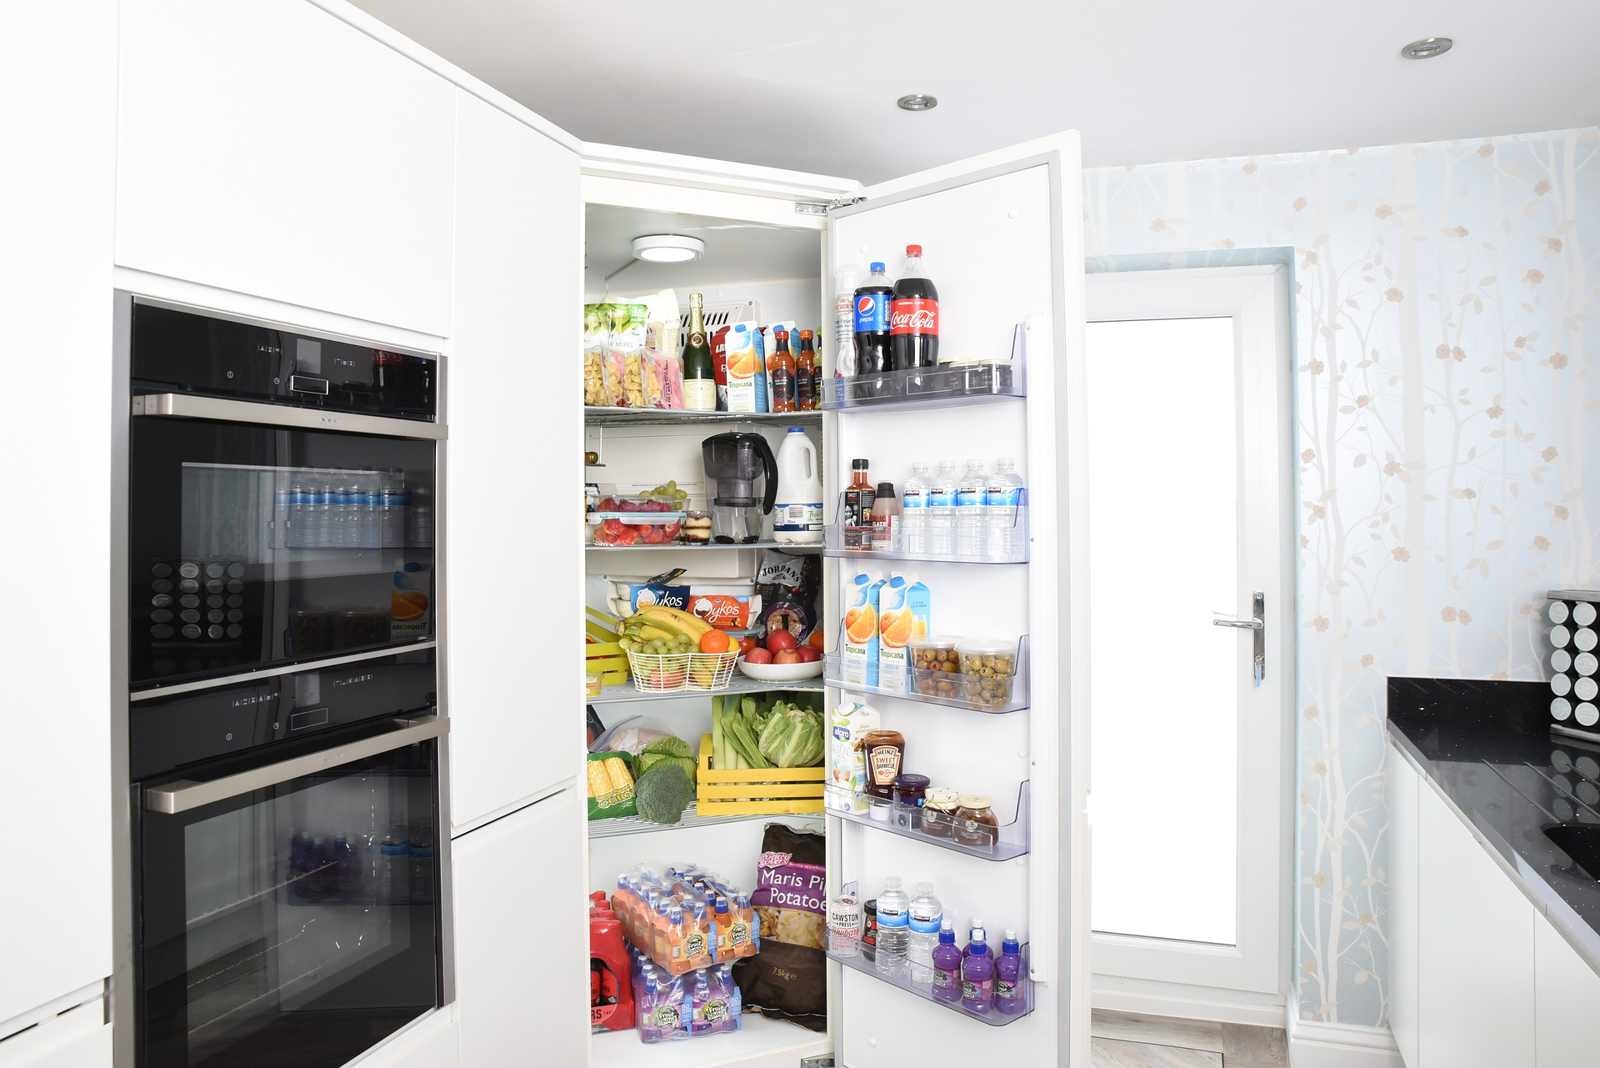 Potraviny v chladničke